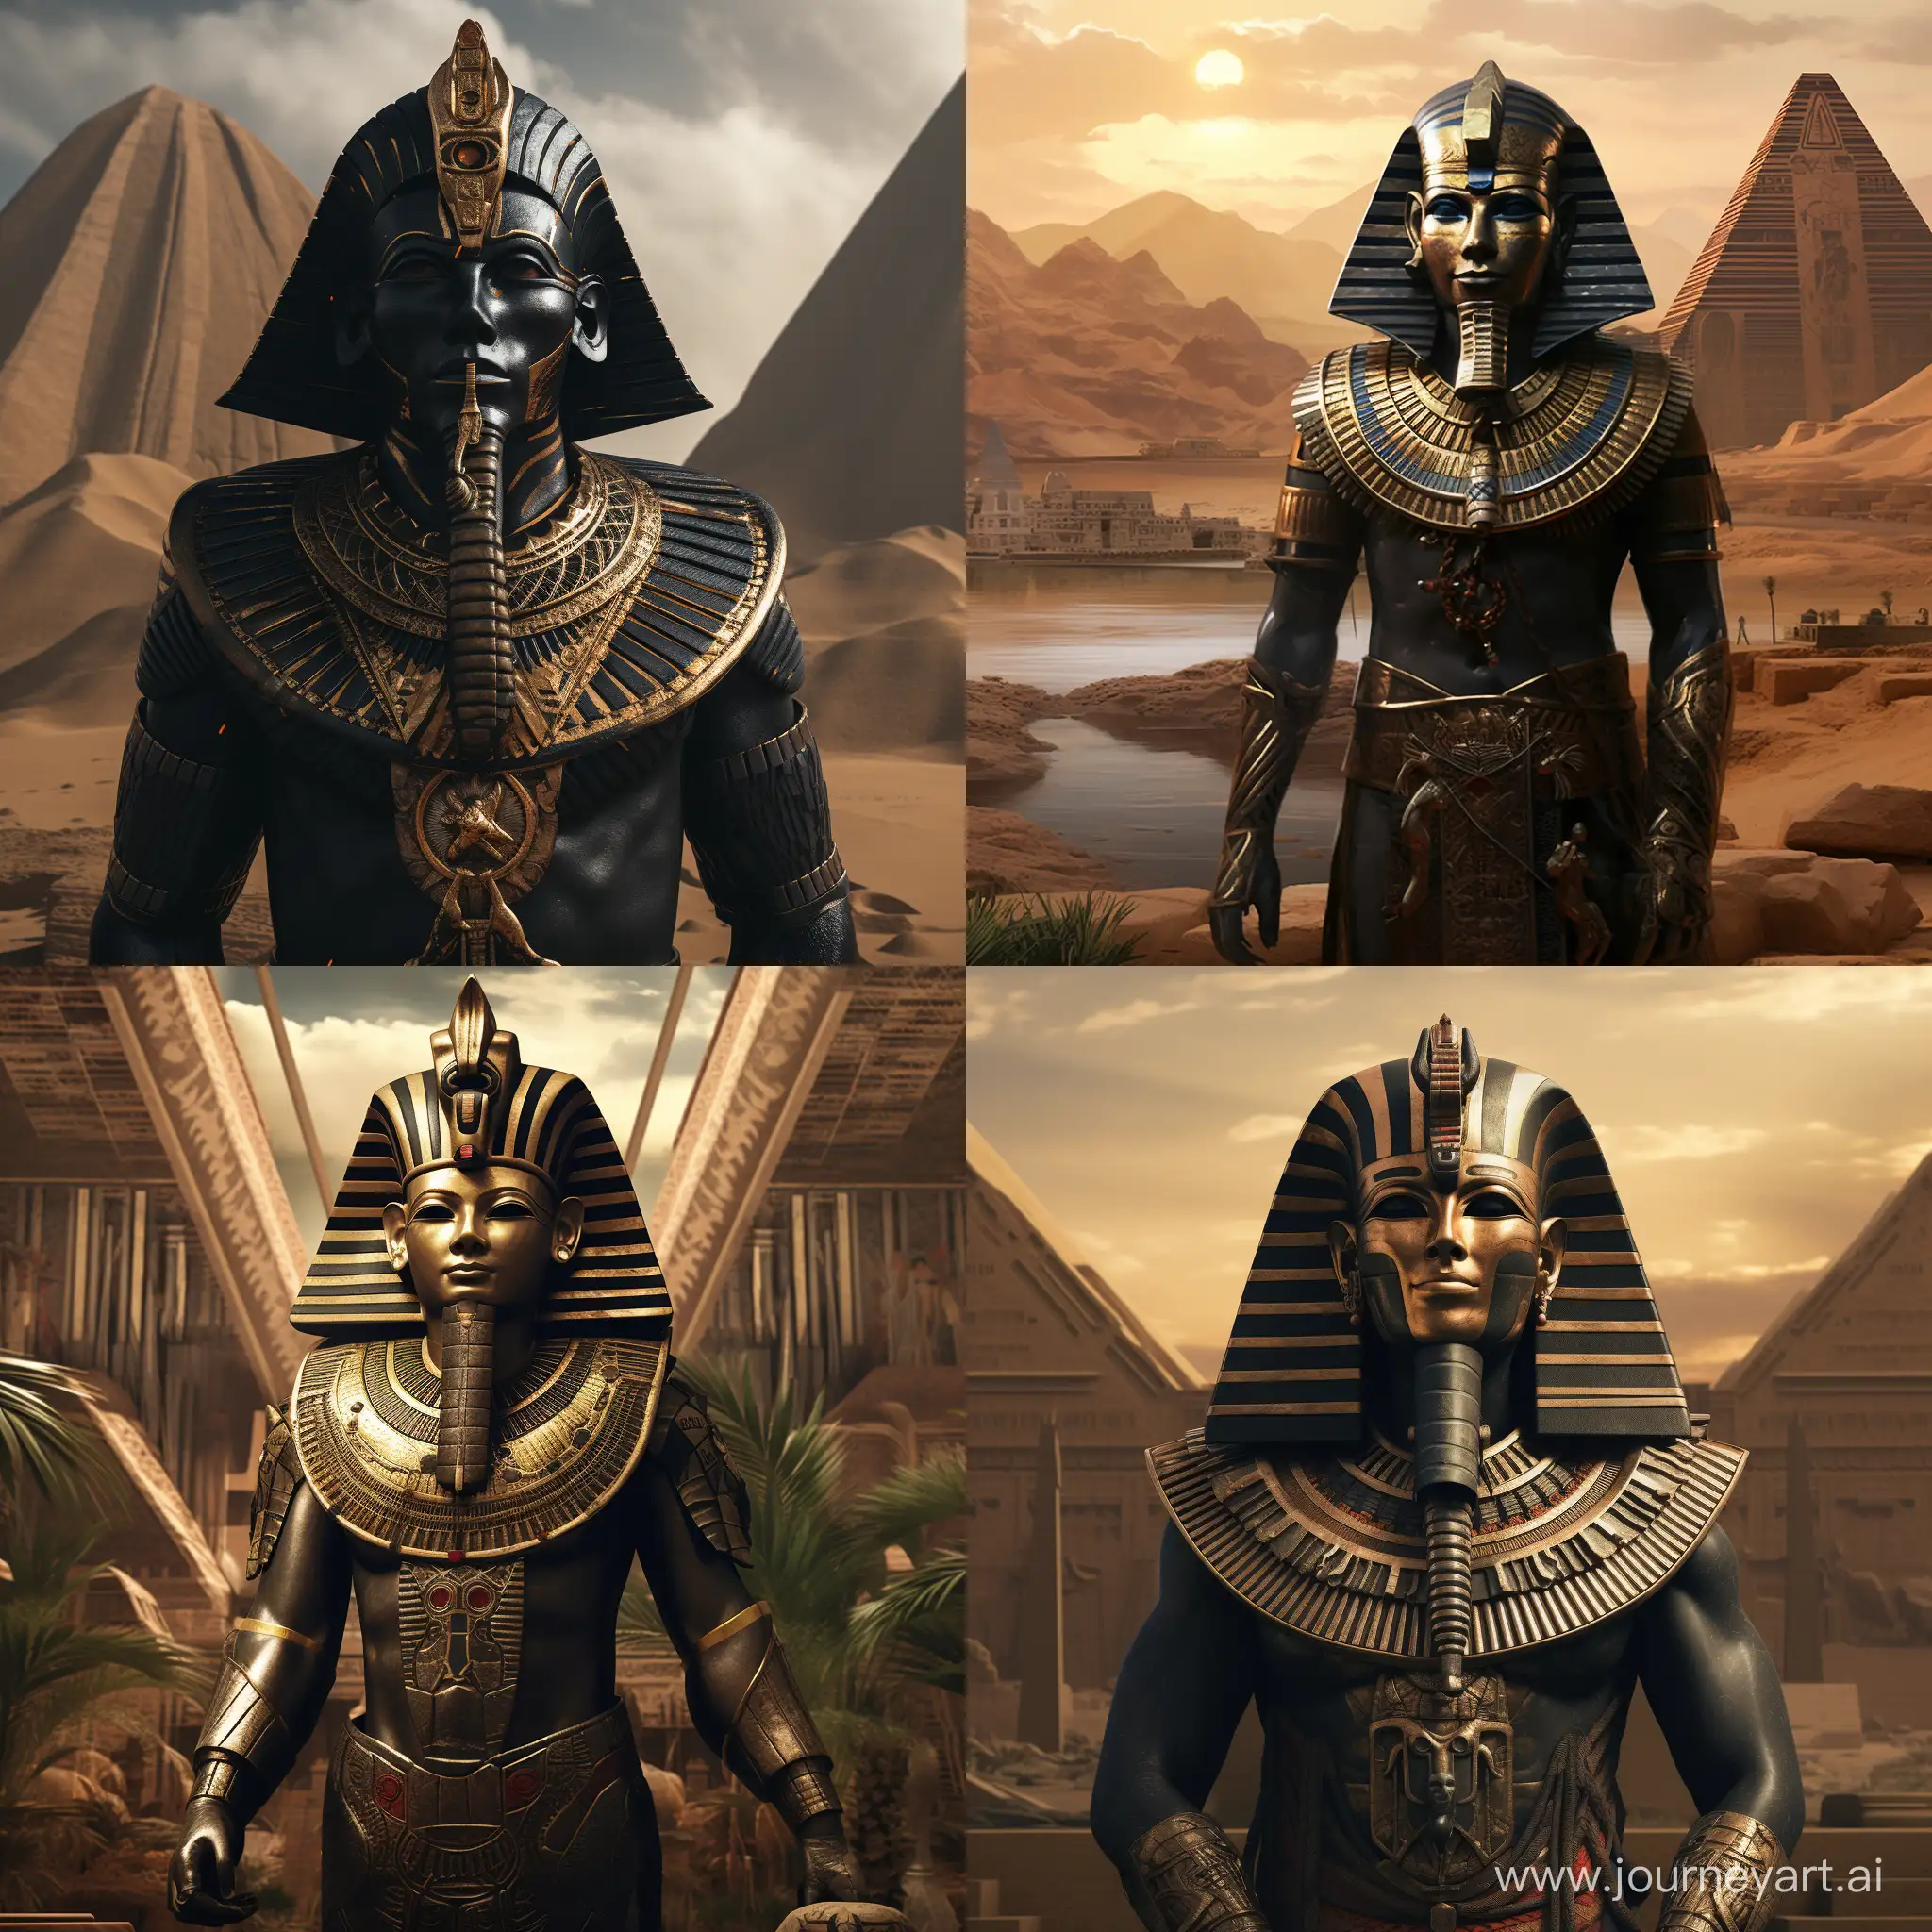 Darth-Vader-Pharaoh-overlooking-Nile-River